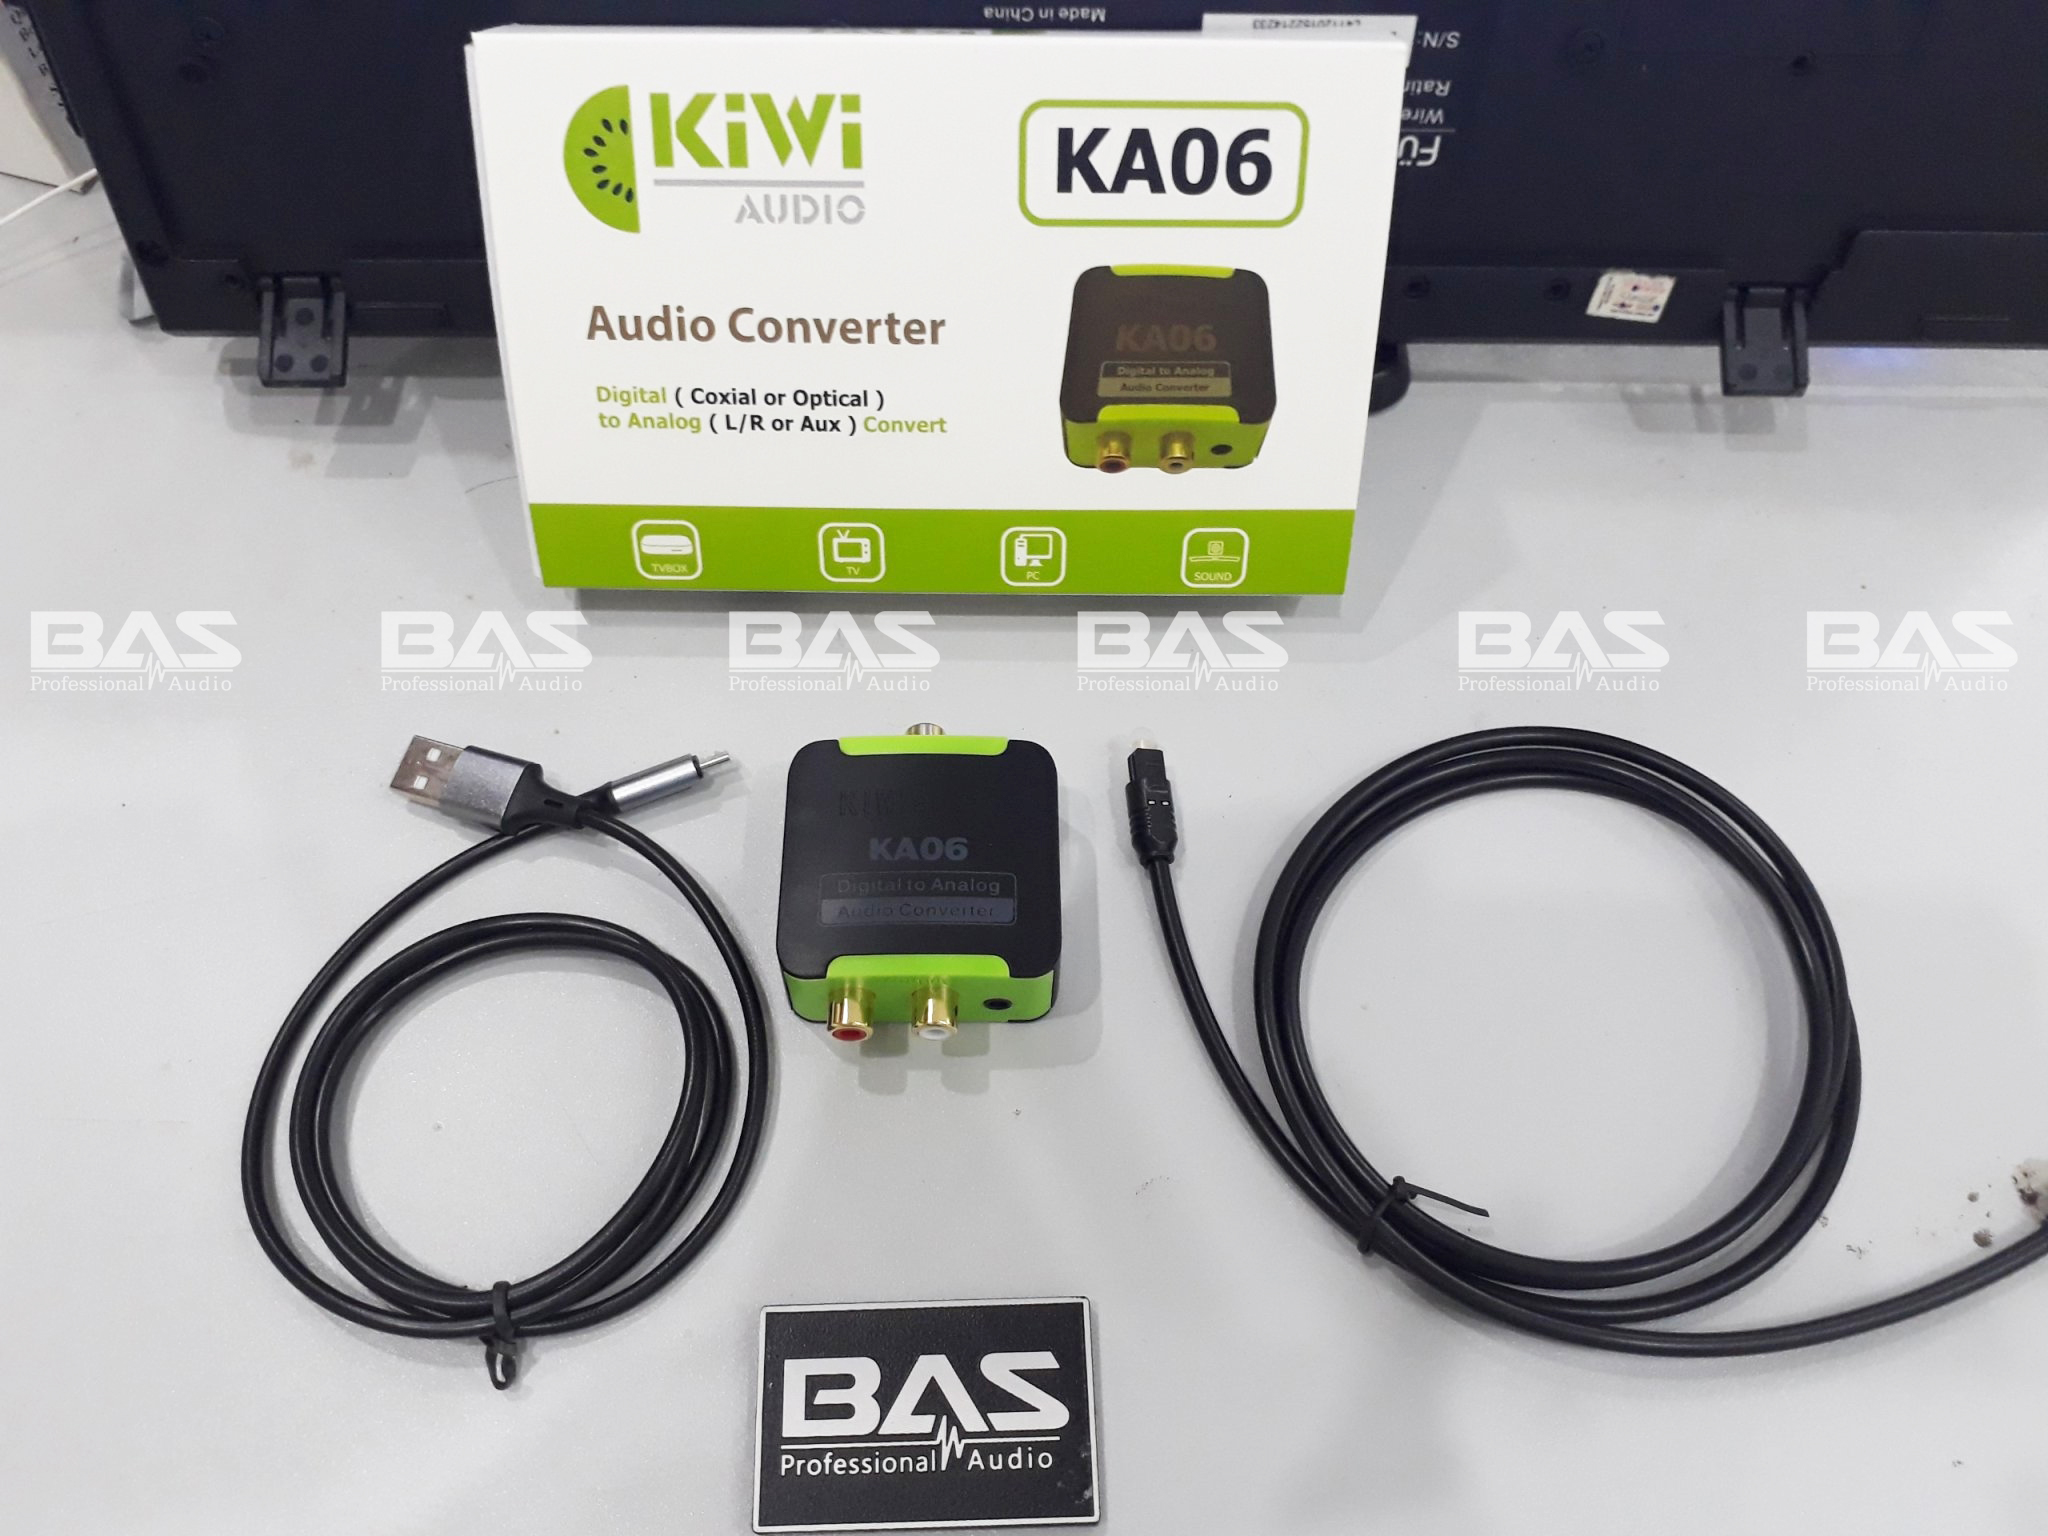 Chuyển quang kiwi KA06 tại BAS Audio Nam Định